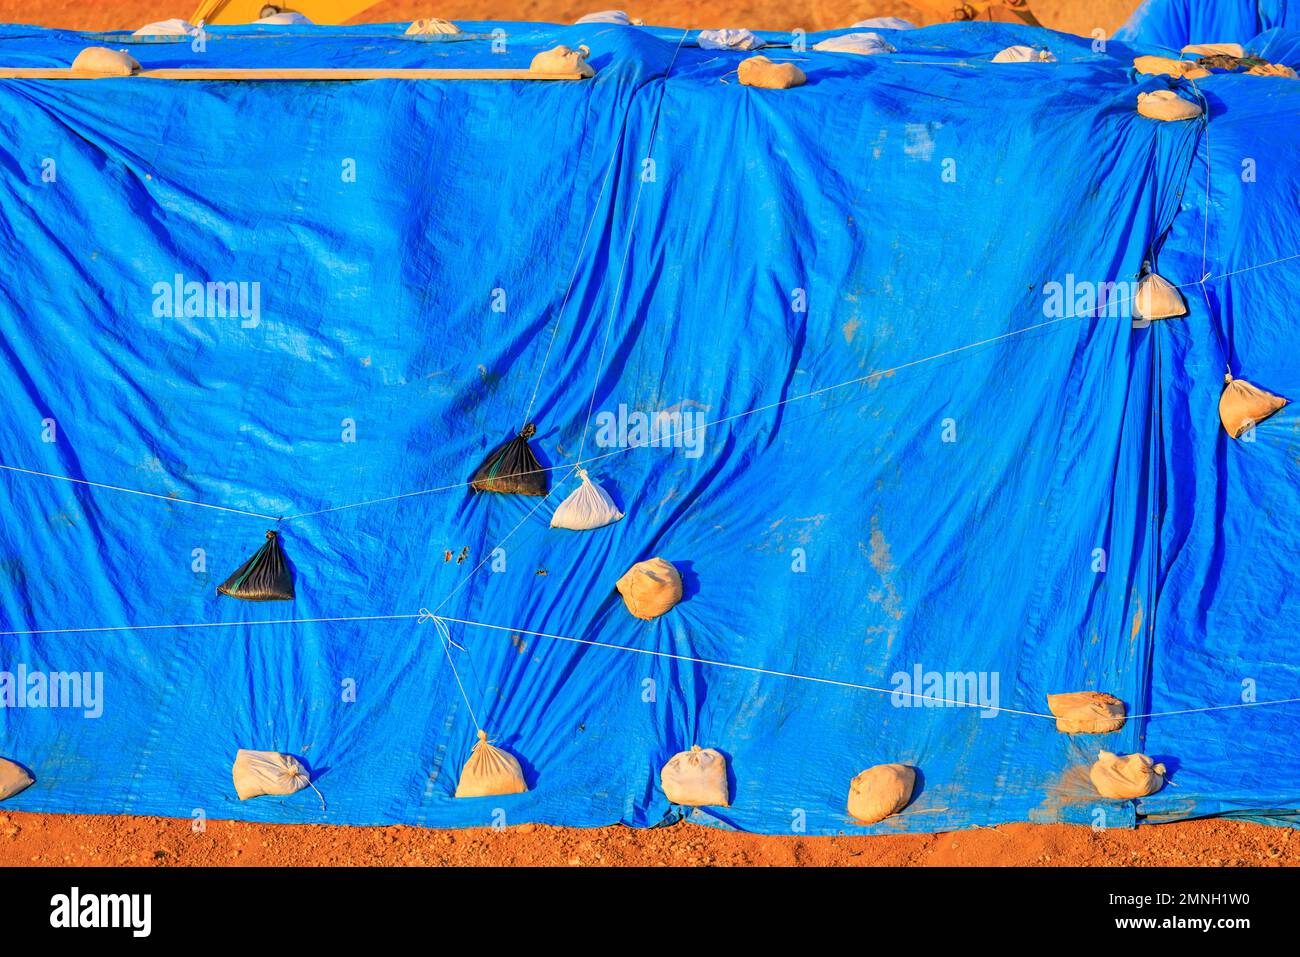 La grande bâche bleue maintenue par des sacs de sable couvre les matériaux à l'extérieur Banque D'Images